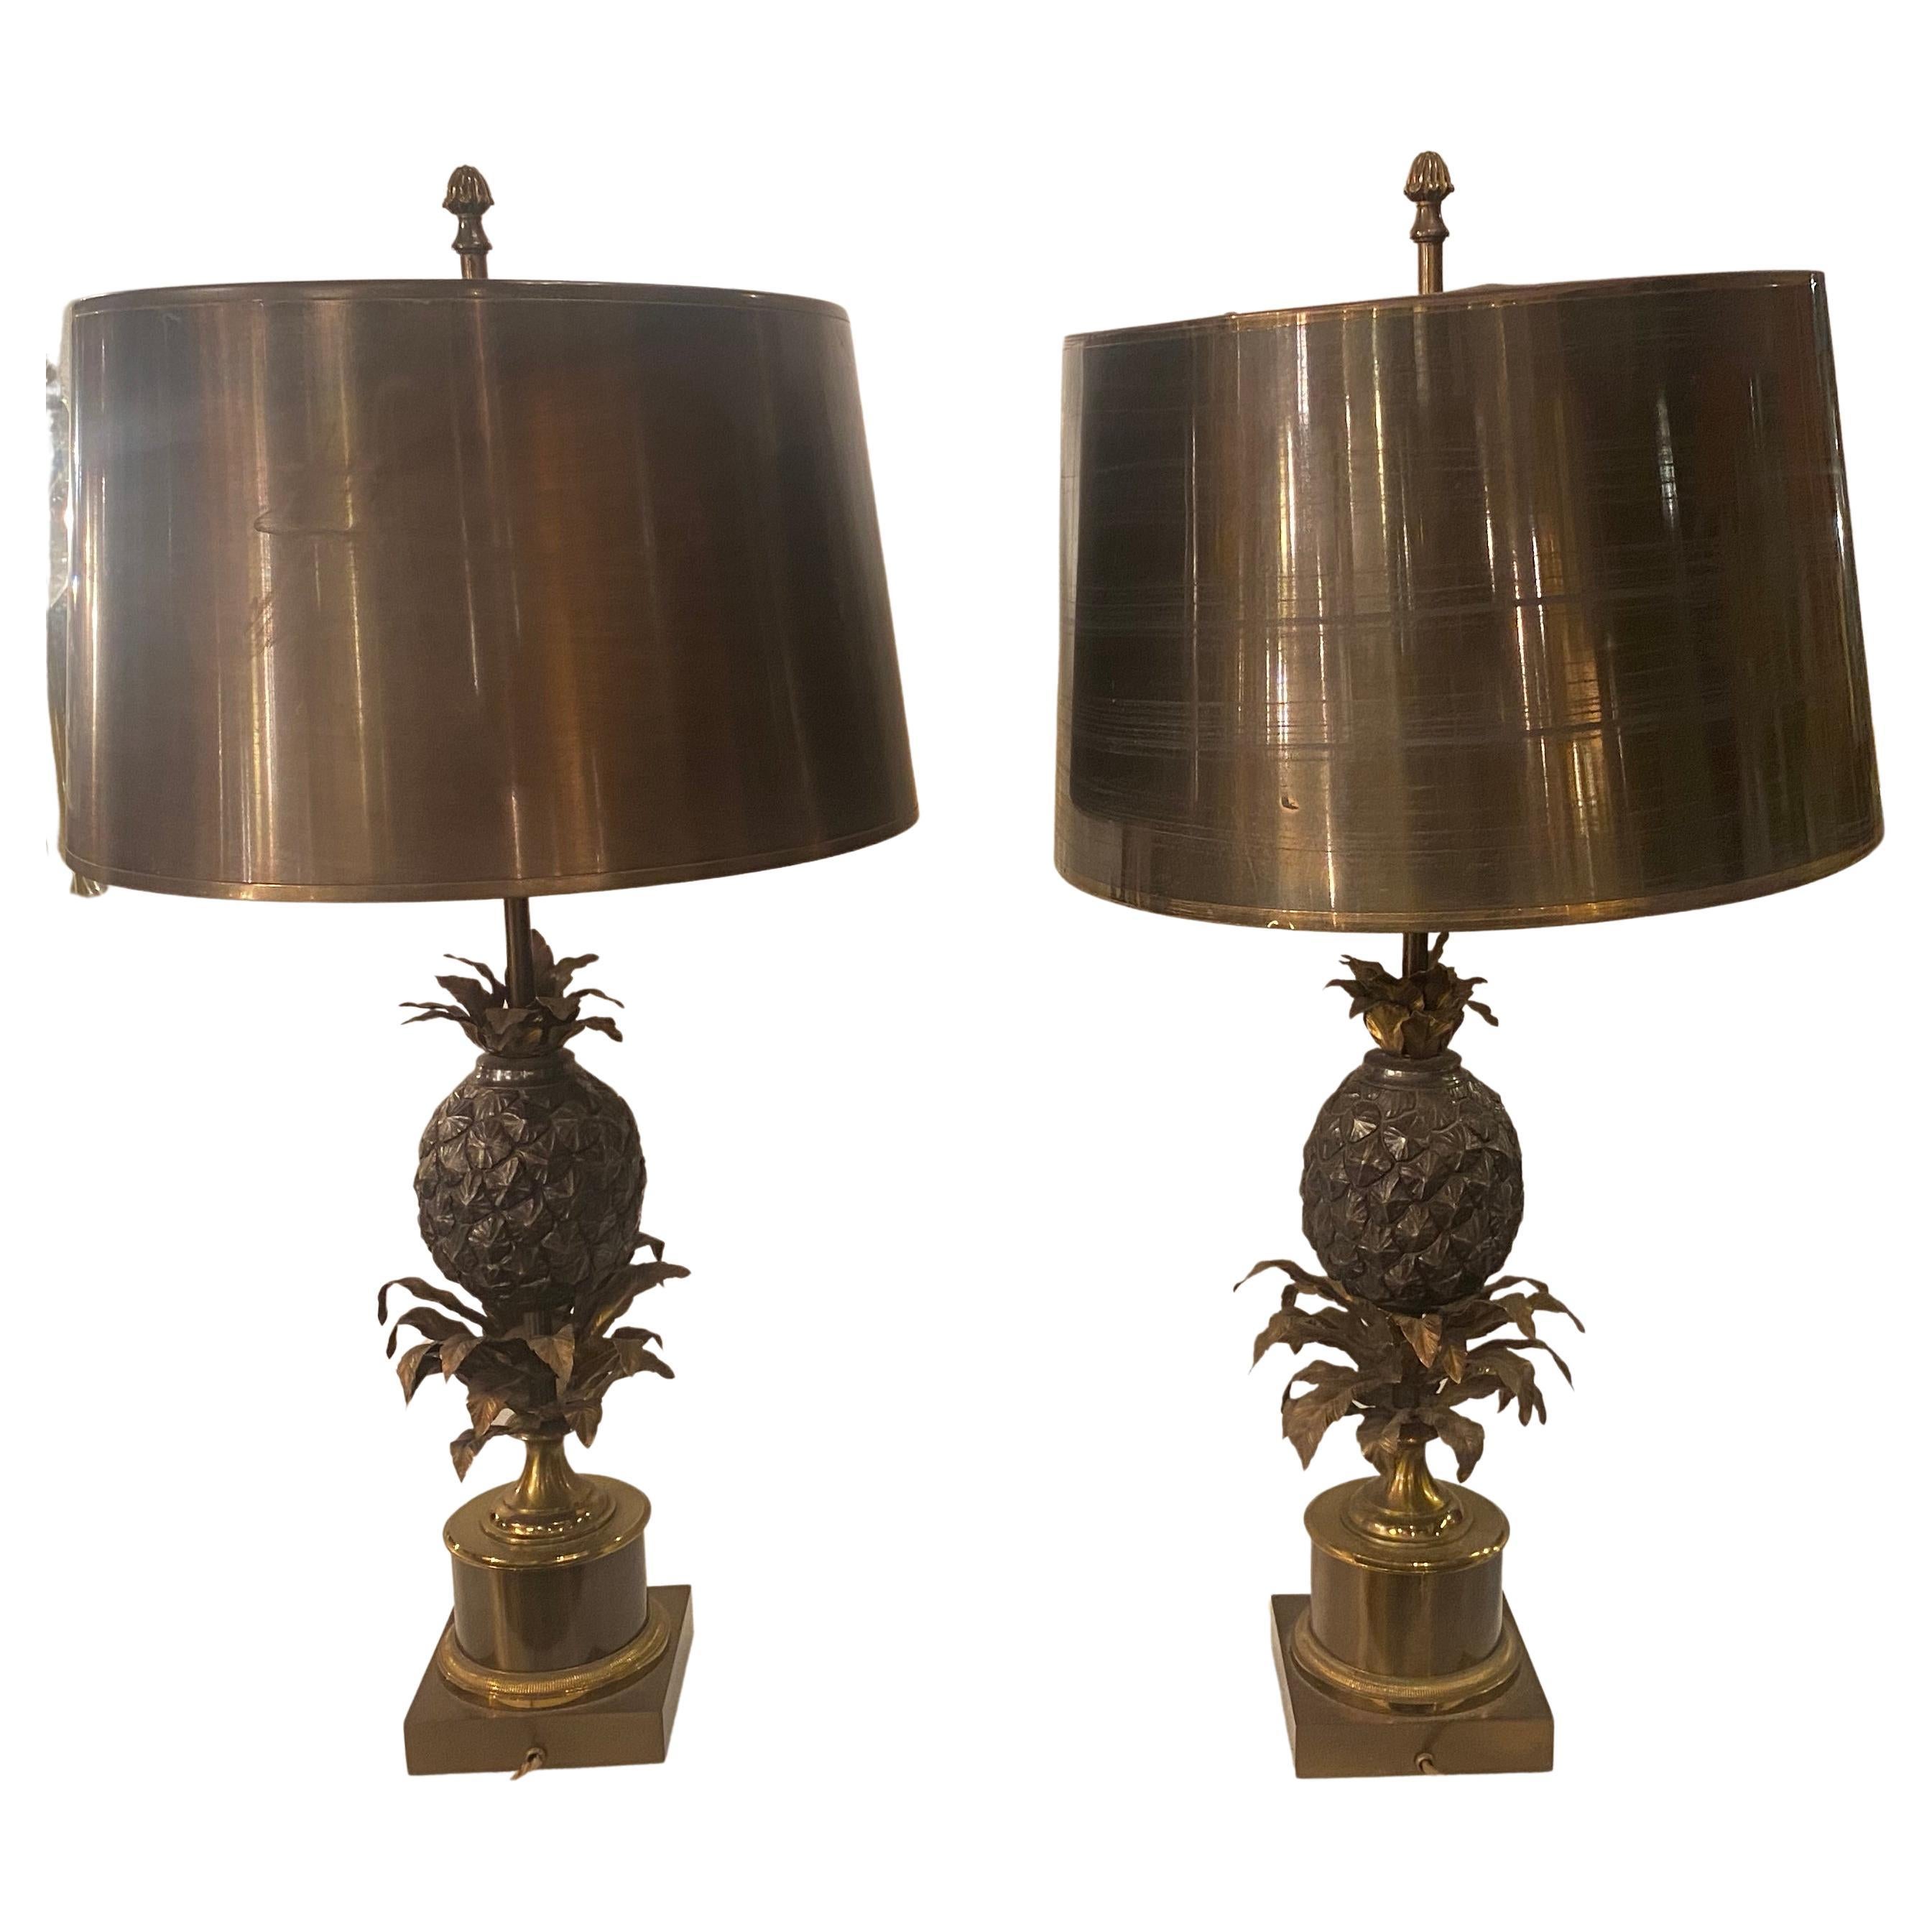 Paar Ananas-Lampen aus Bronze oder ähnlich, Messingschirm, signiert Charles, 1950/70, Paar